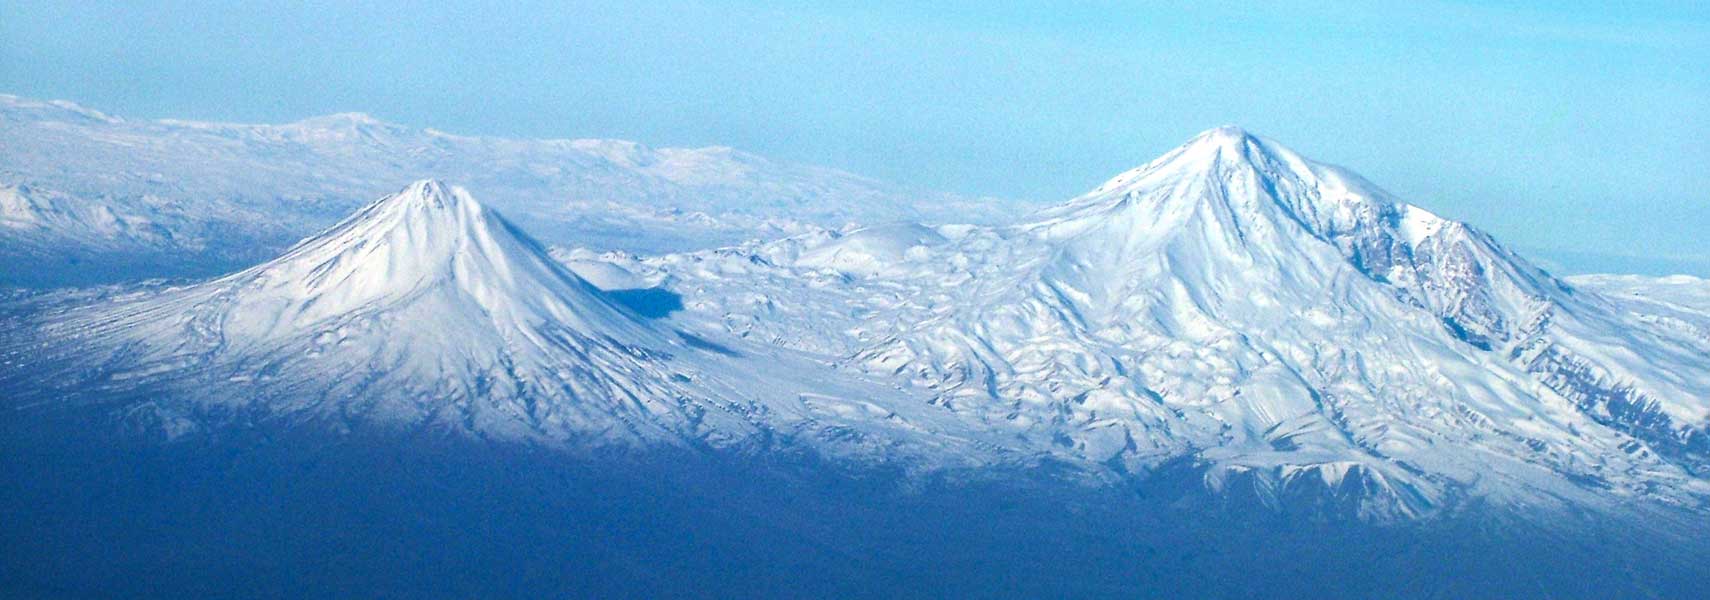 Mount Ararat peaks, Turkey